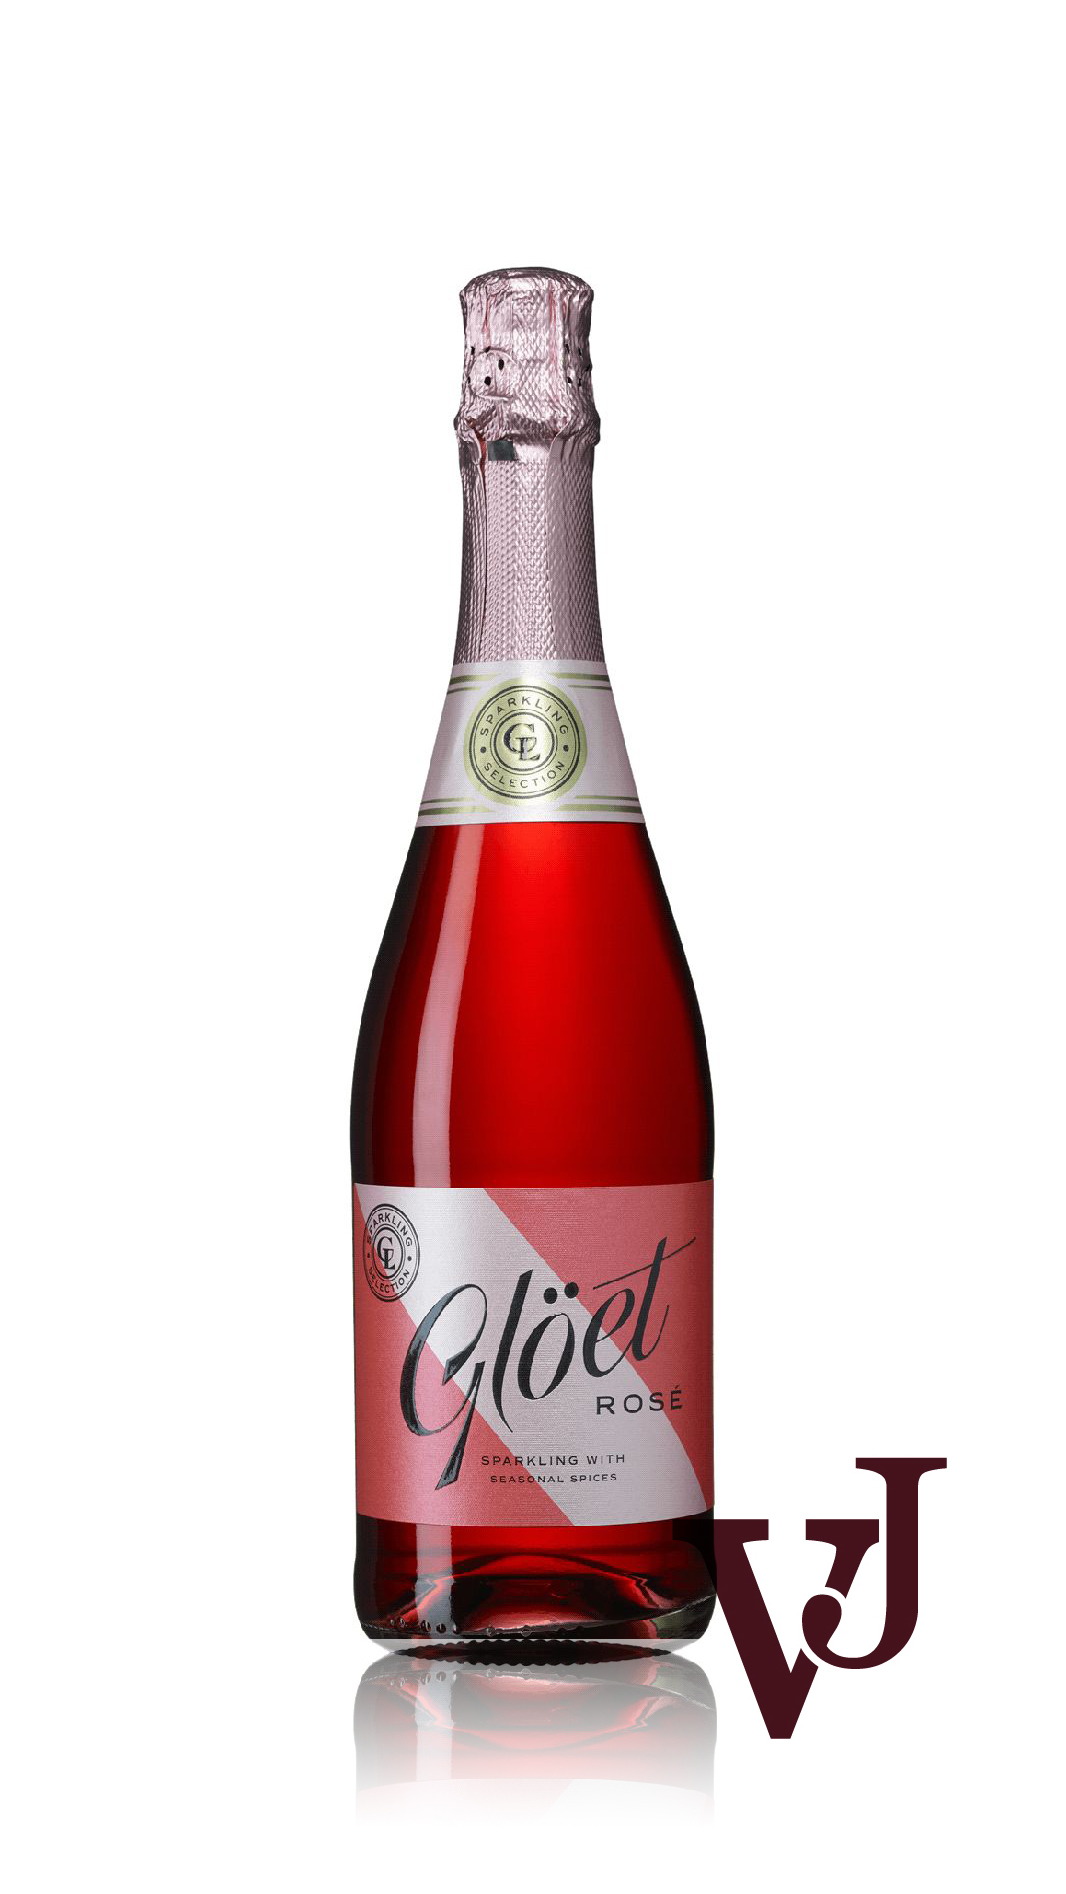 Övrigt Vin - Glöet Rosé artikel nummer 5206701 från producenten Customdrinks S.L.U. från Spanien.